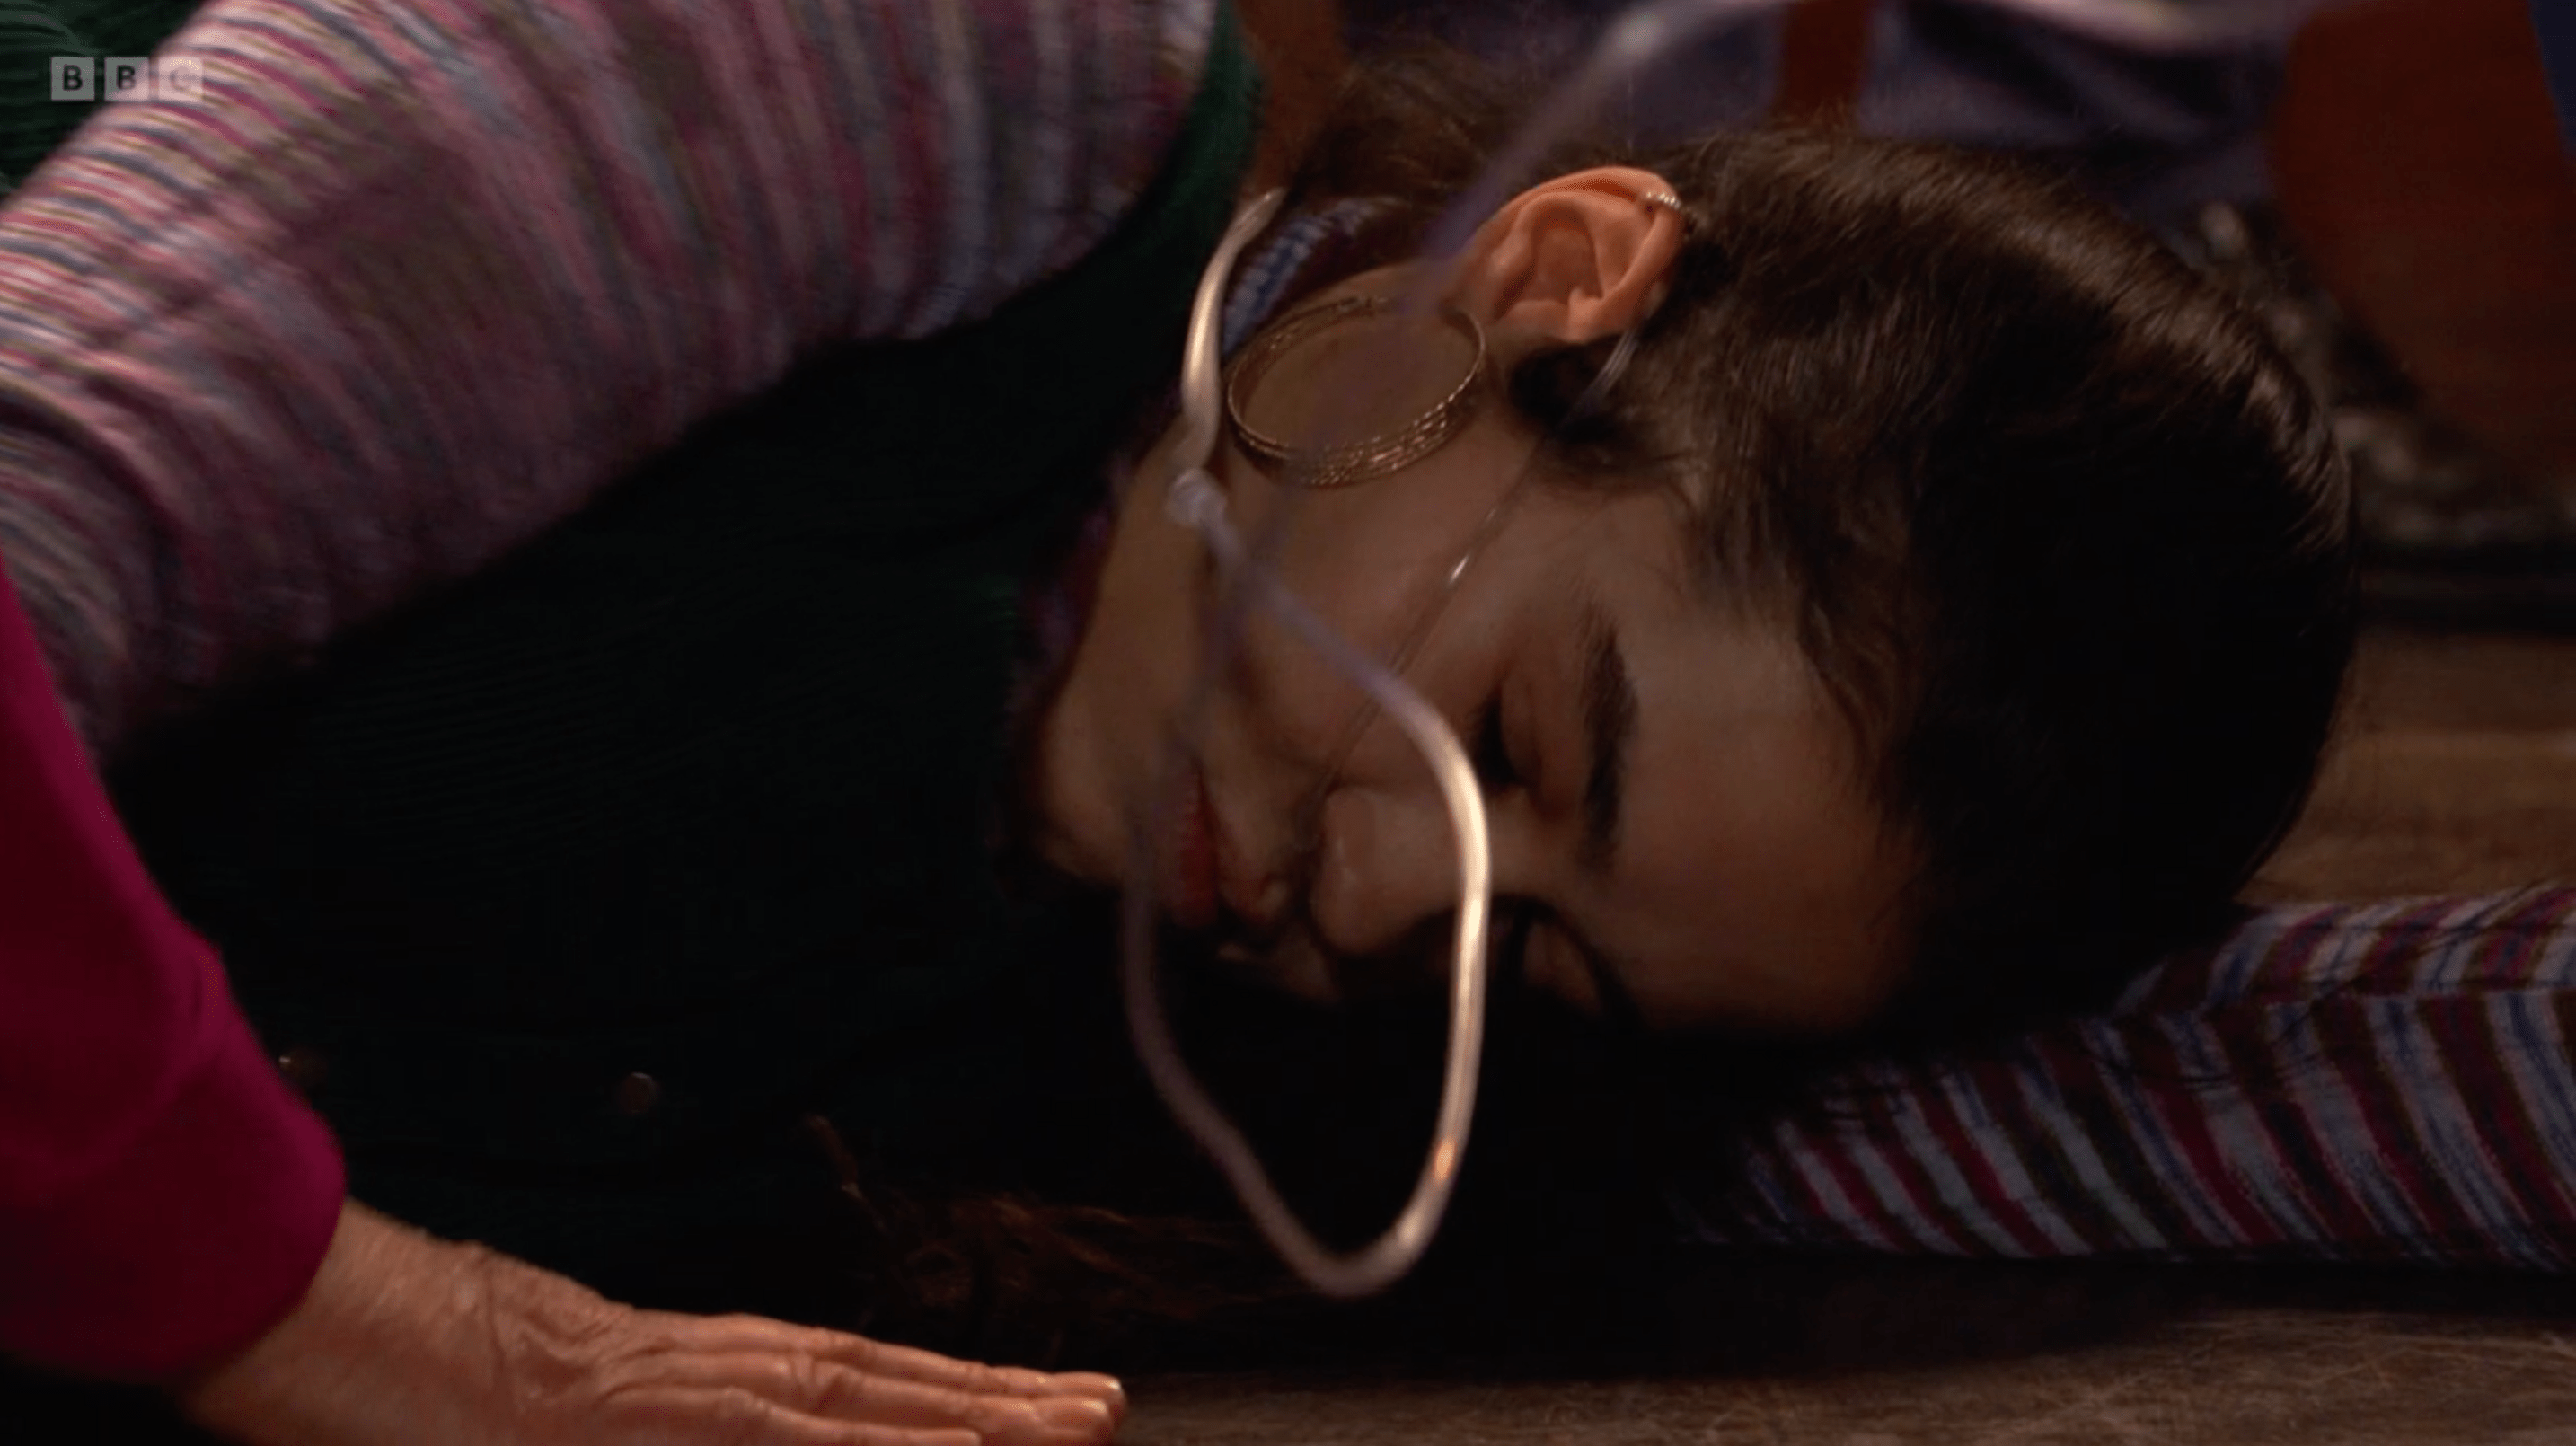 EastEnders’ Dean Wicks attacks his own daughter in sickening scenes